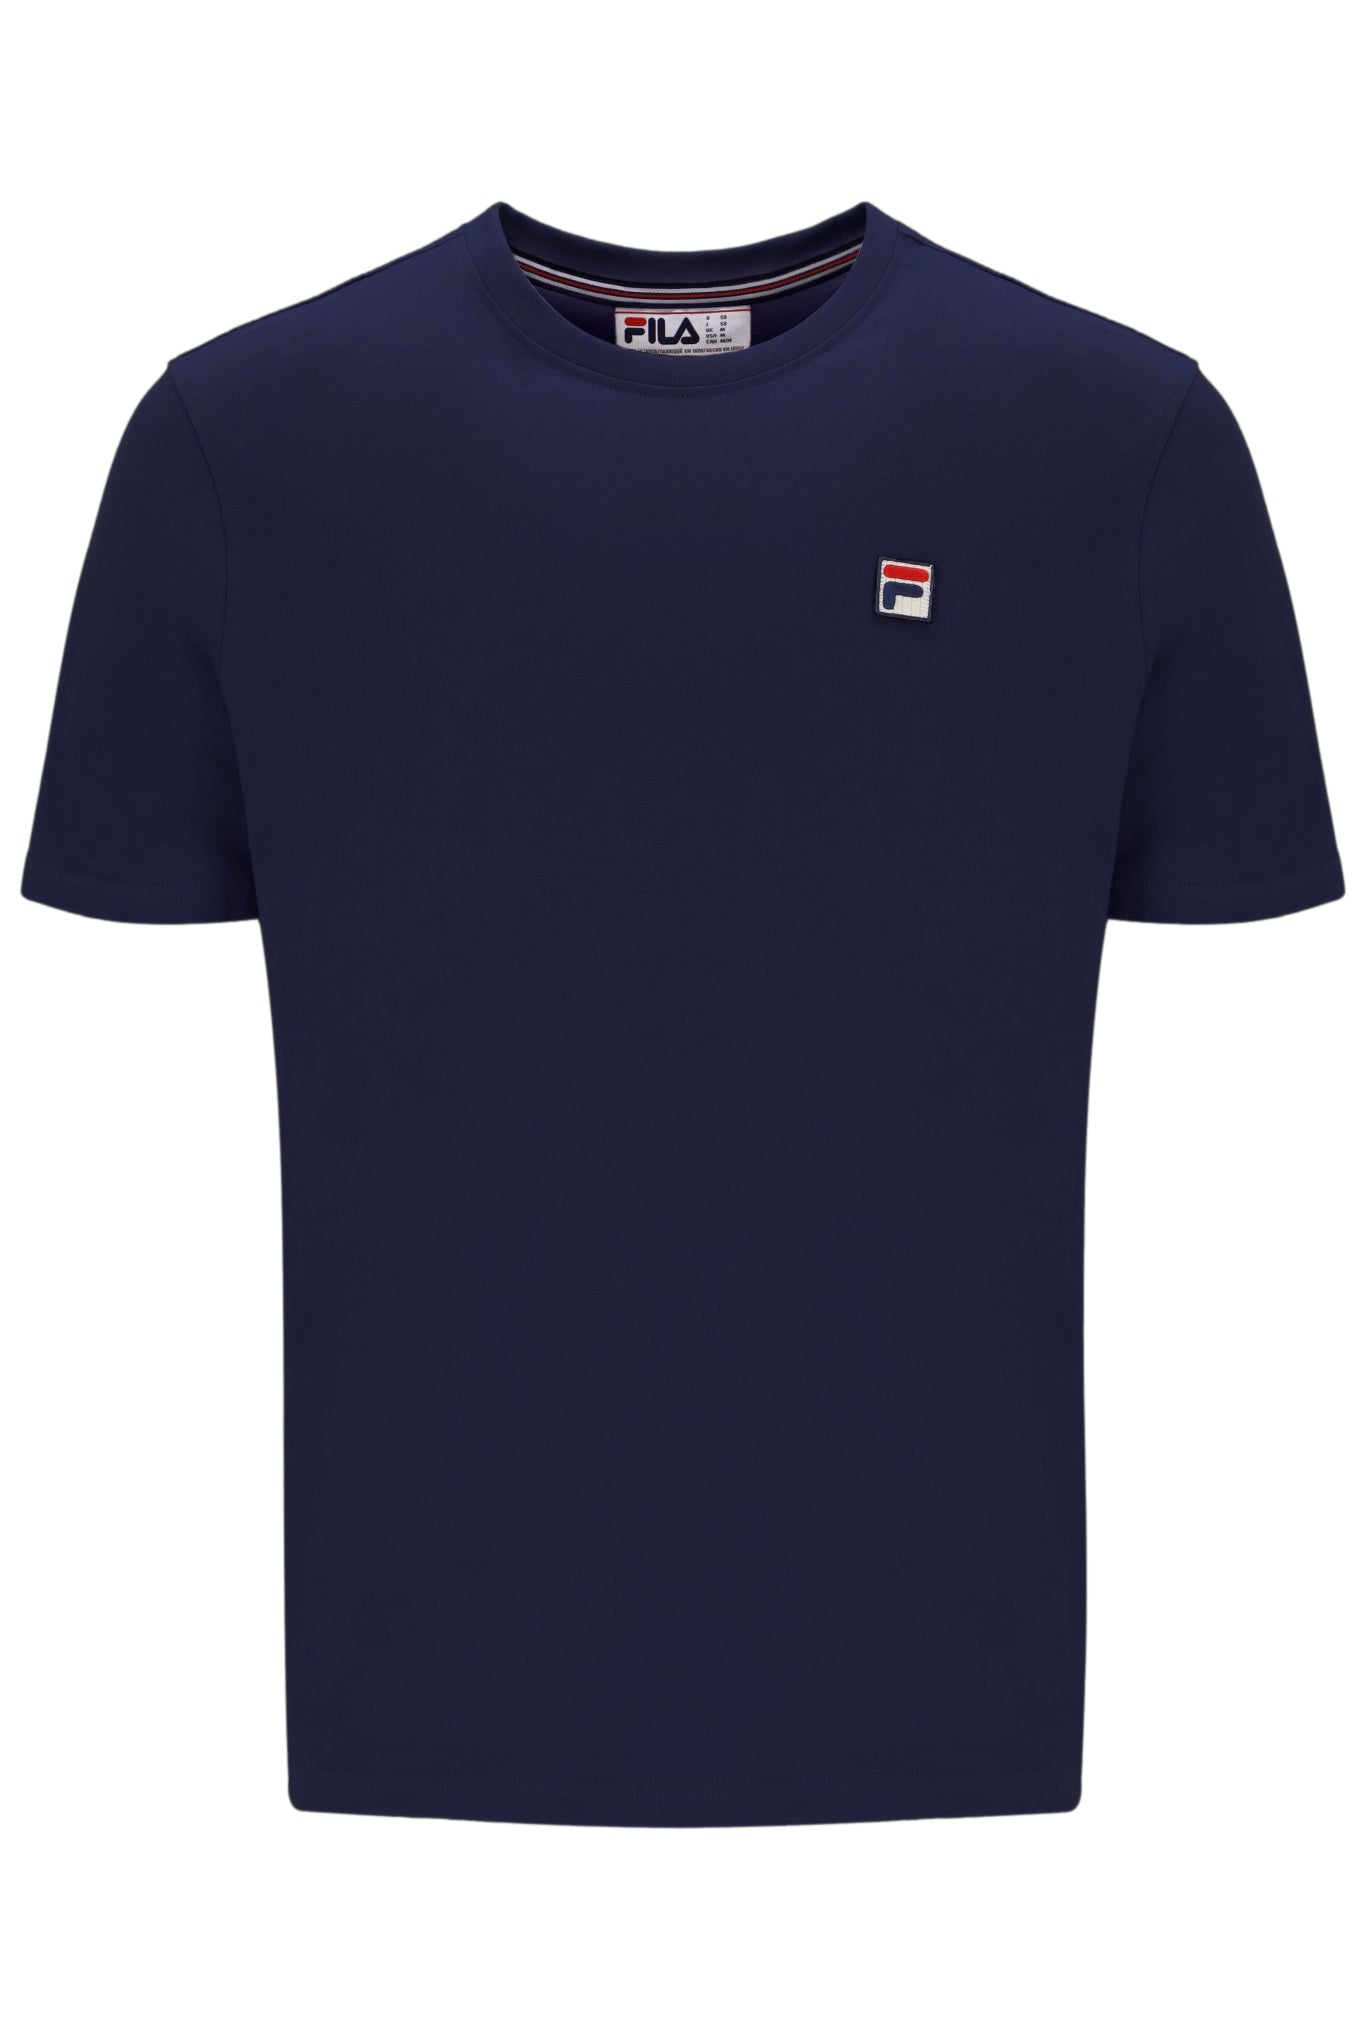 FILA Sunny Essential T-Shirt - Fila Navy